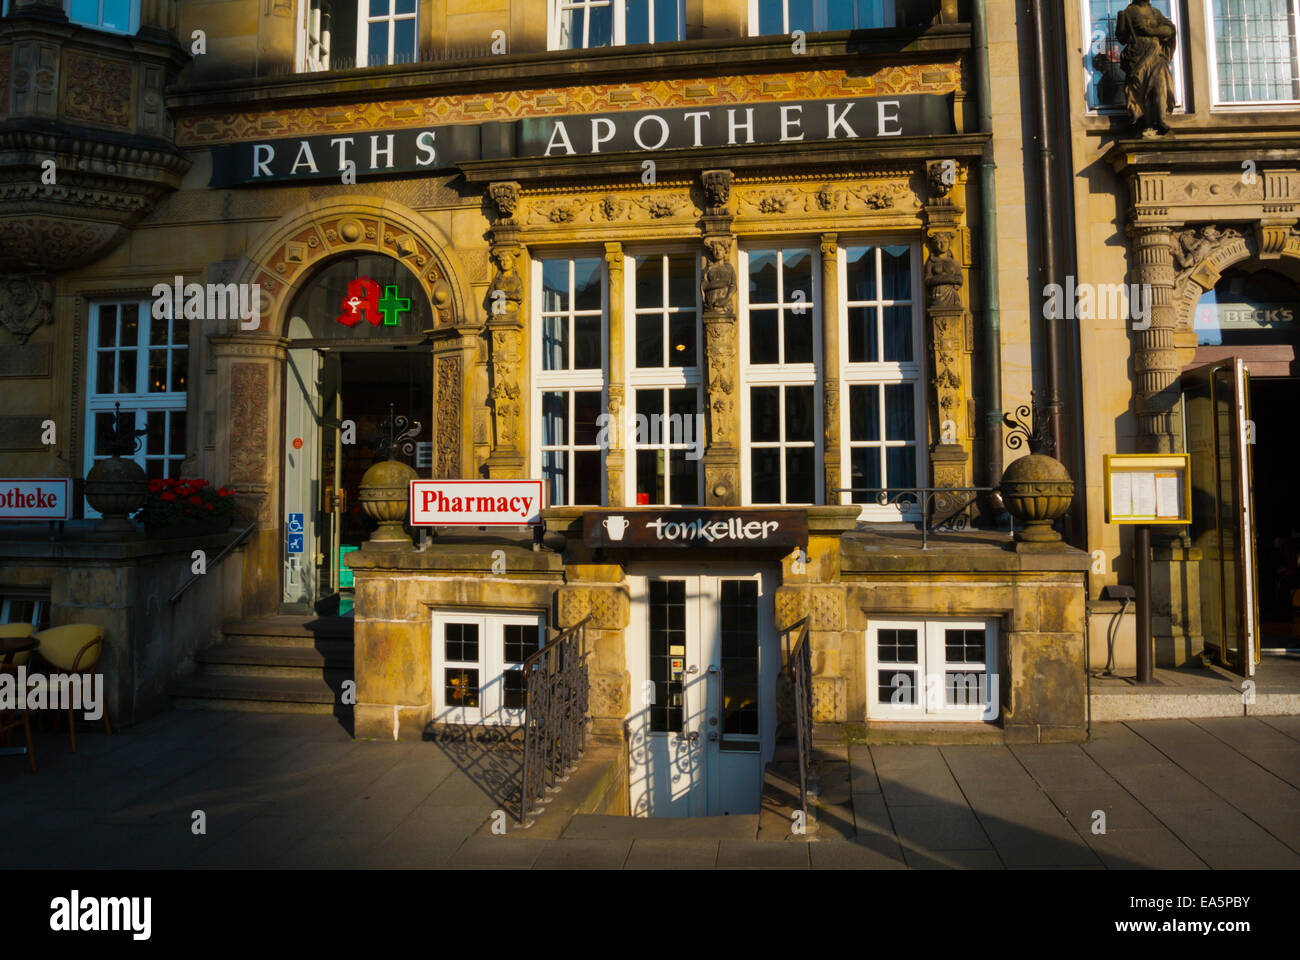 Las ratas Apotheke, la famosa farmacia, Marktplatz, plaza principal, el Altstadt, el casco antiguo, Bremen, Alemania Foto de stock